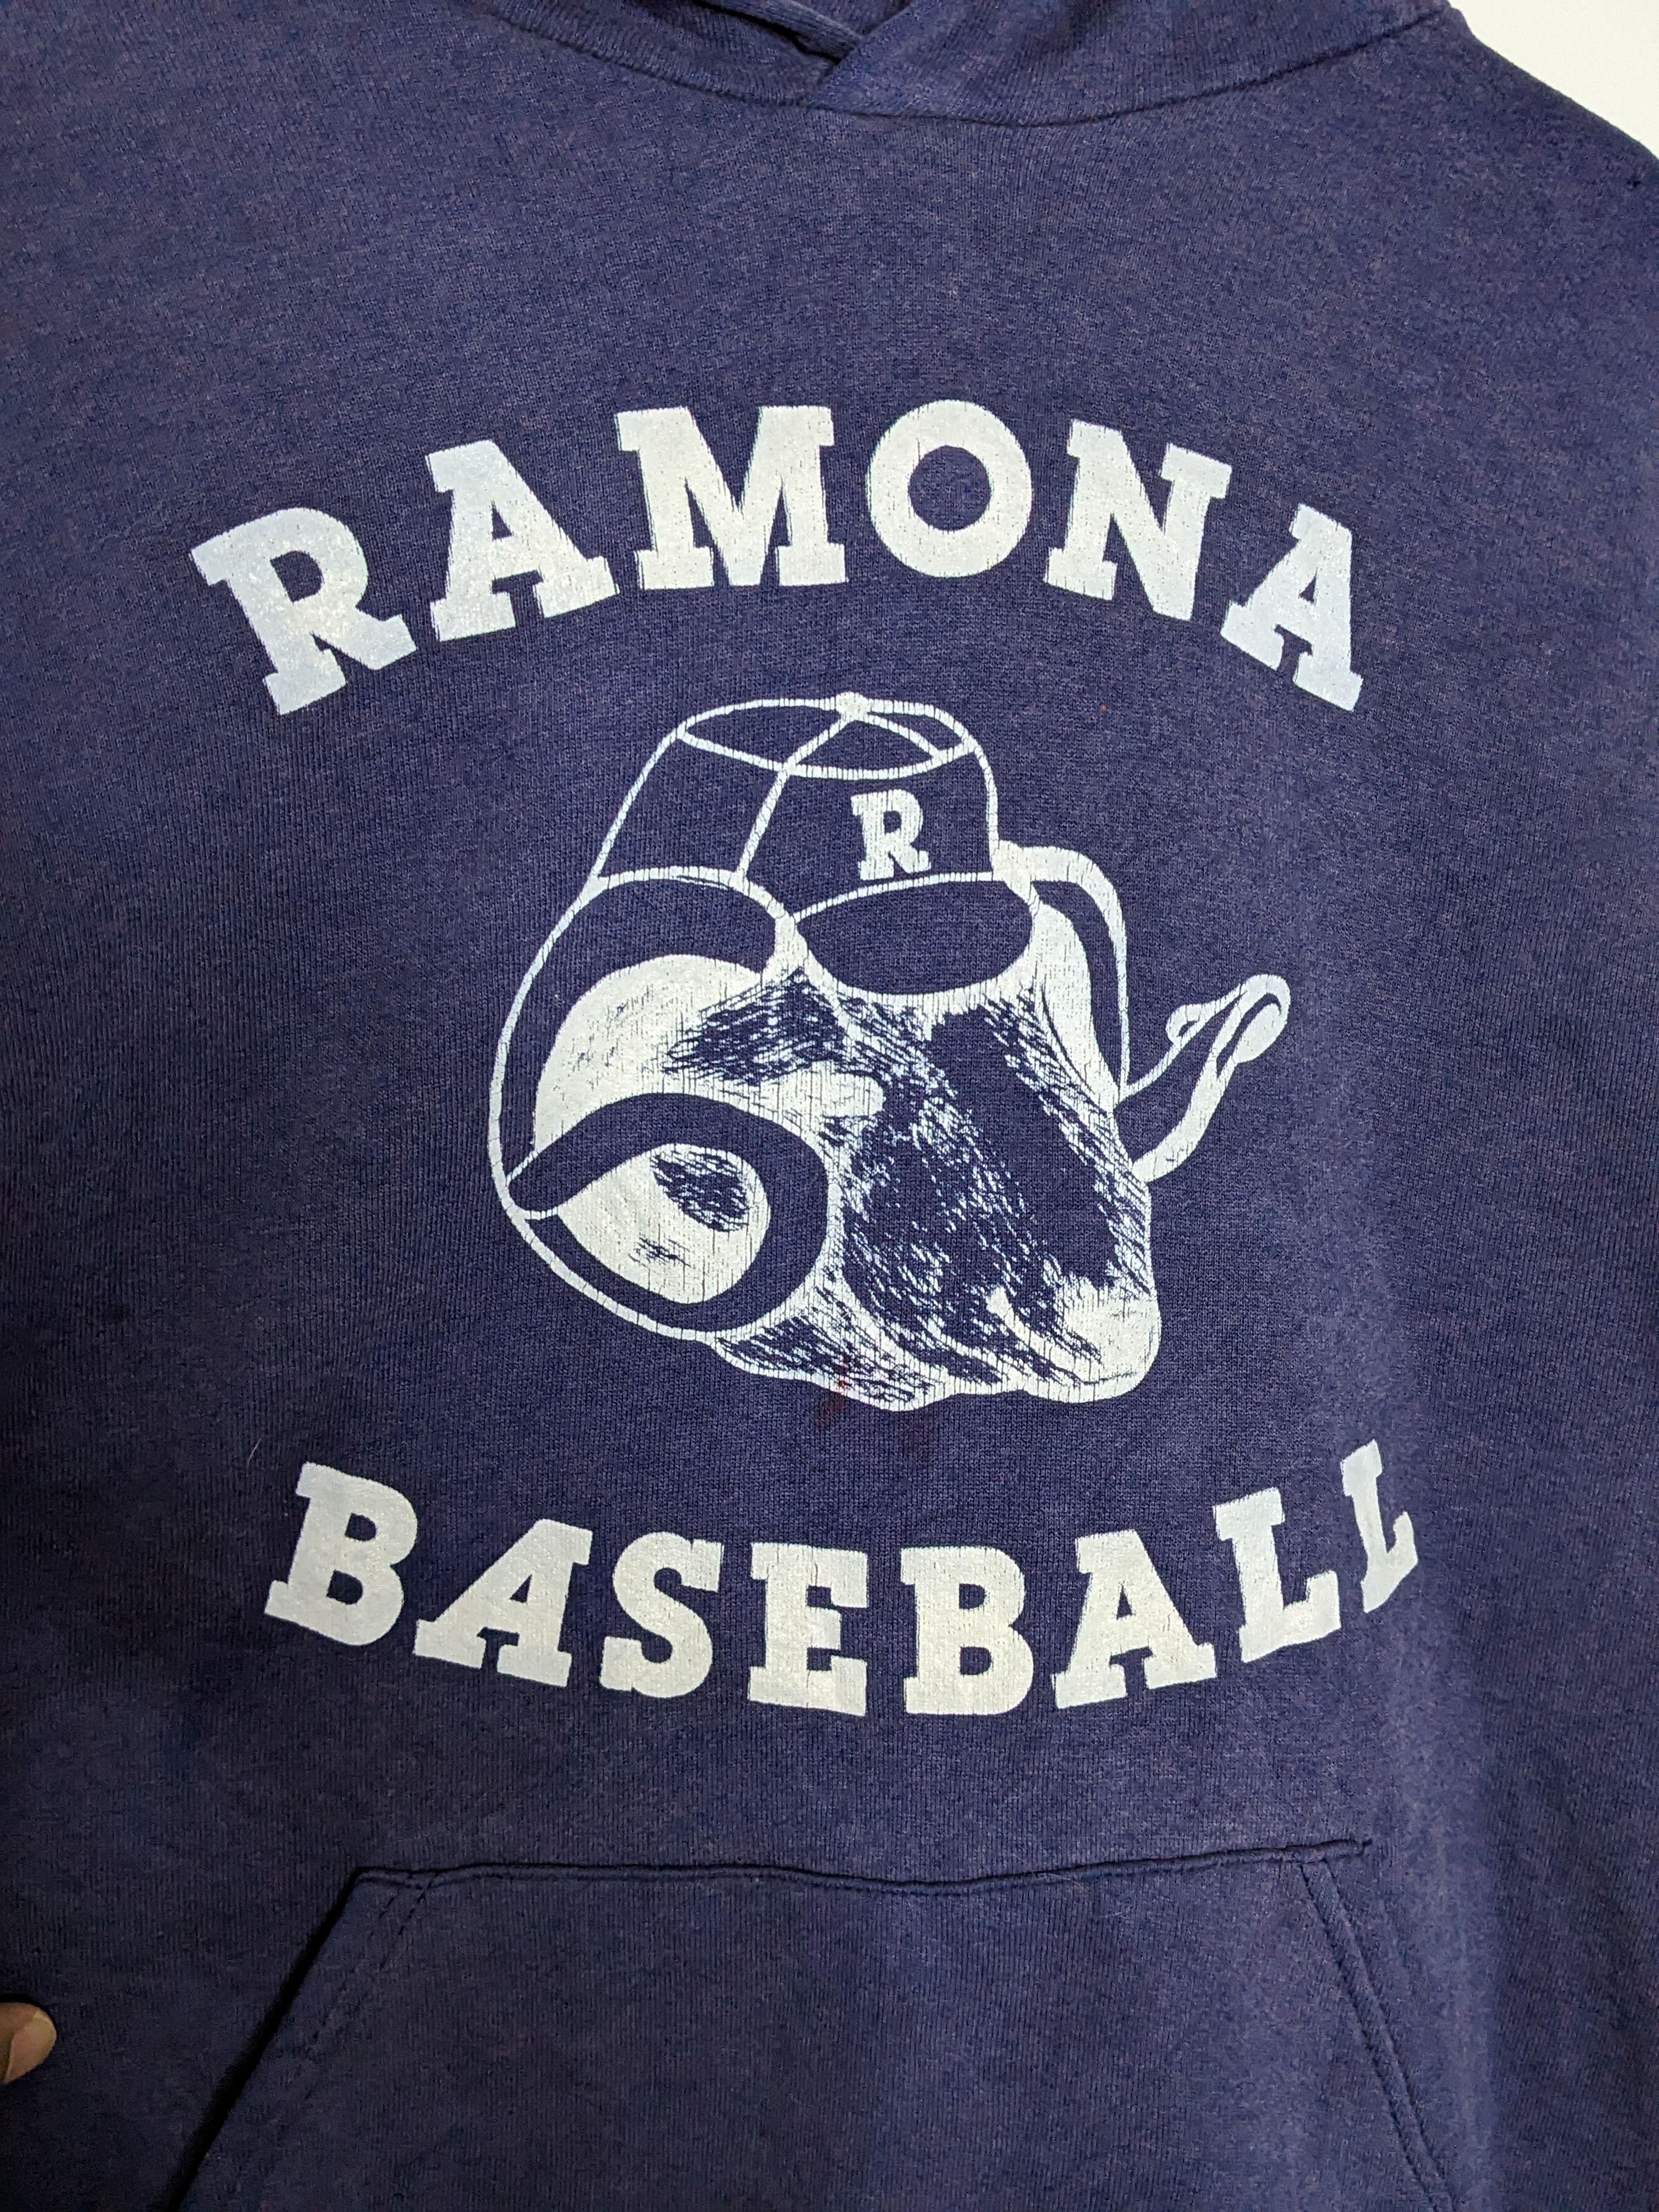 Vintage 80s Russel Ramona Baseball Navy Blue Womens Hoodie - 4